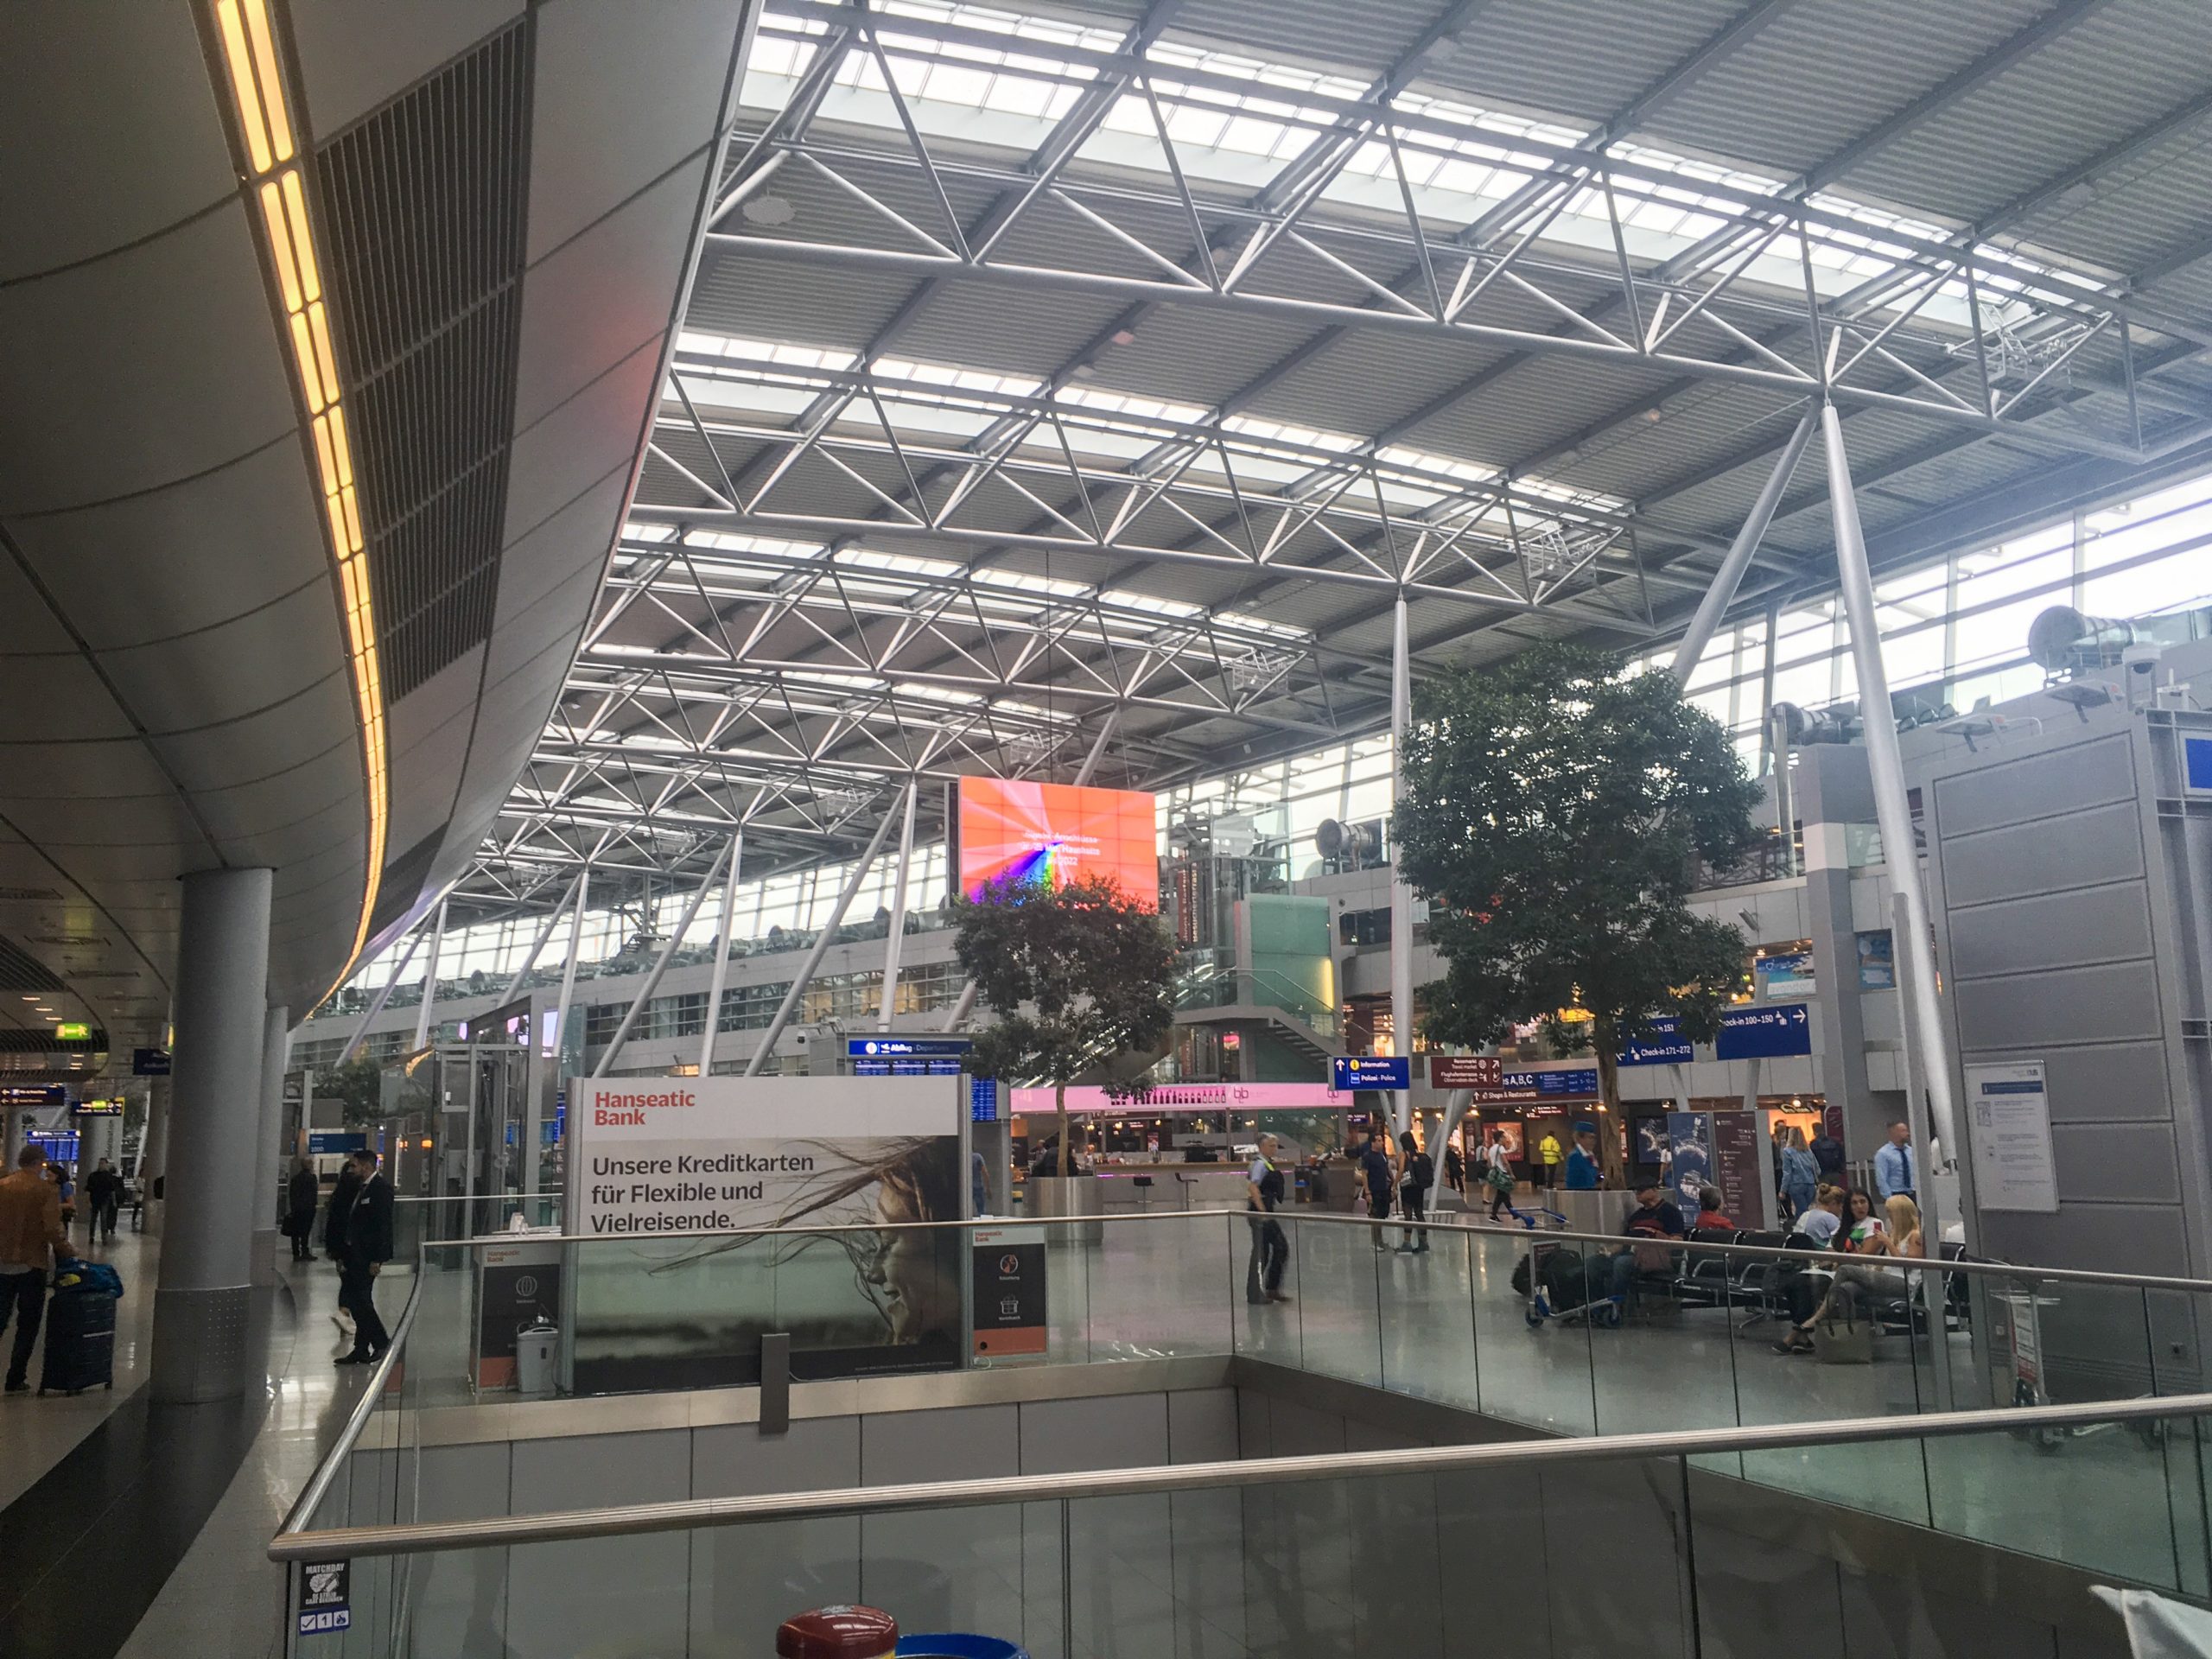 【ドイツ】デュッセルドルフ空港から市内・中央駅までの行き方を解説! 電車での移動がオススメ。